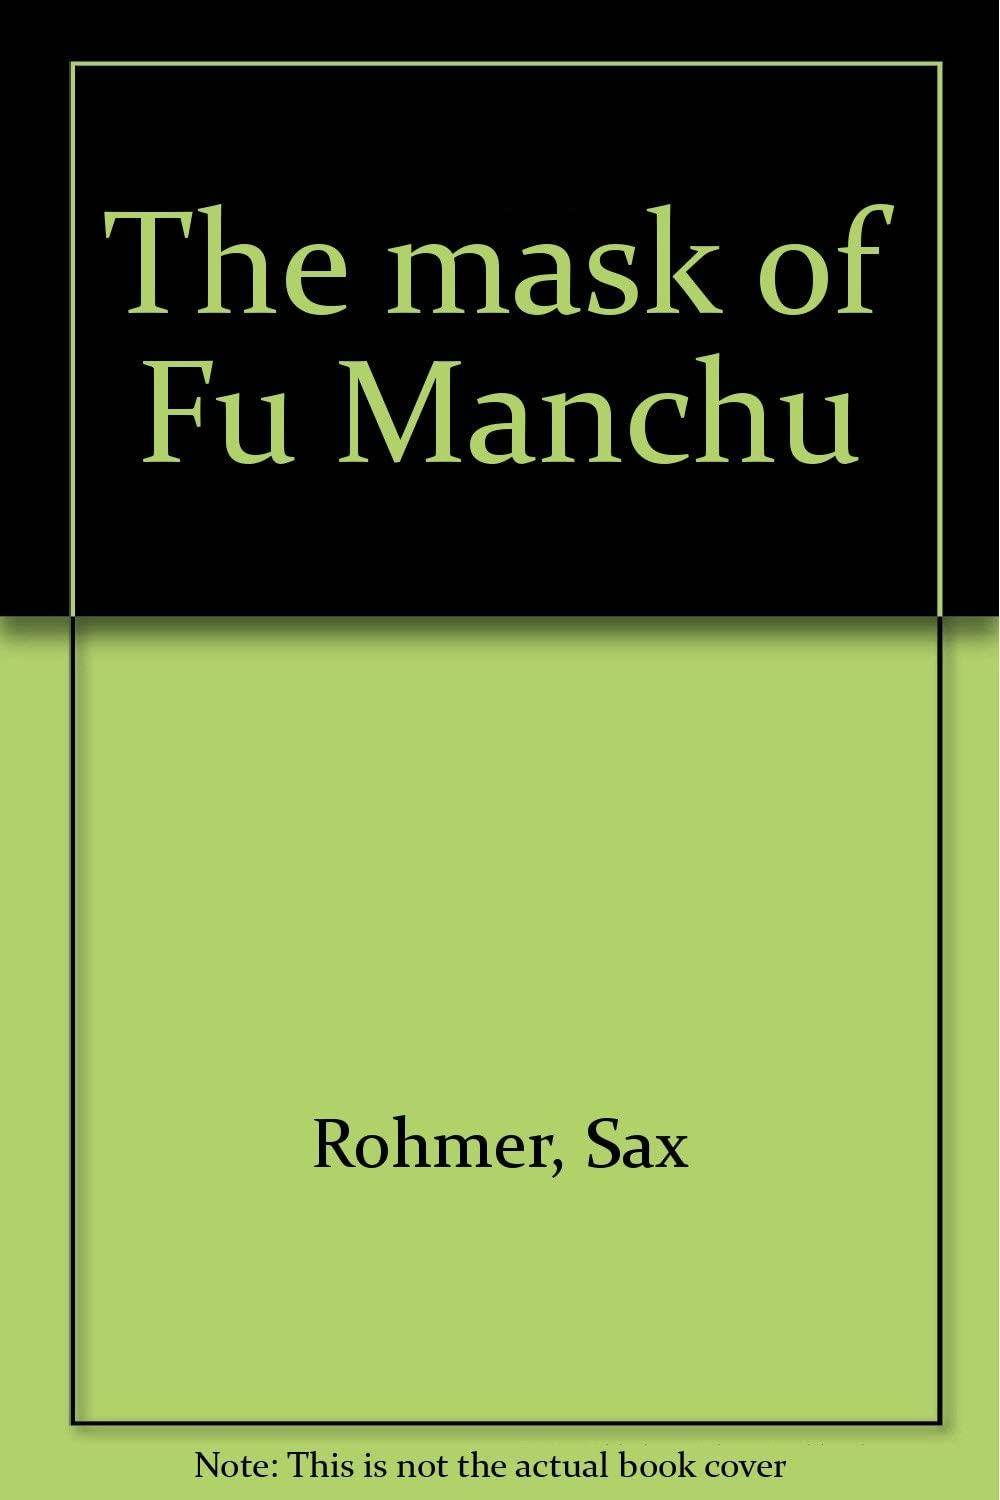 The mask of Fu Manchu